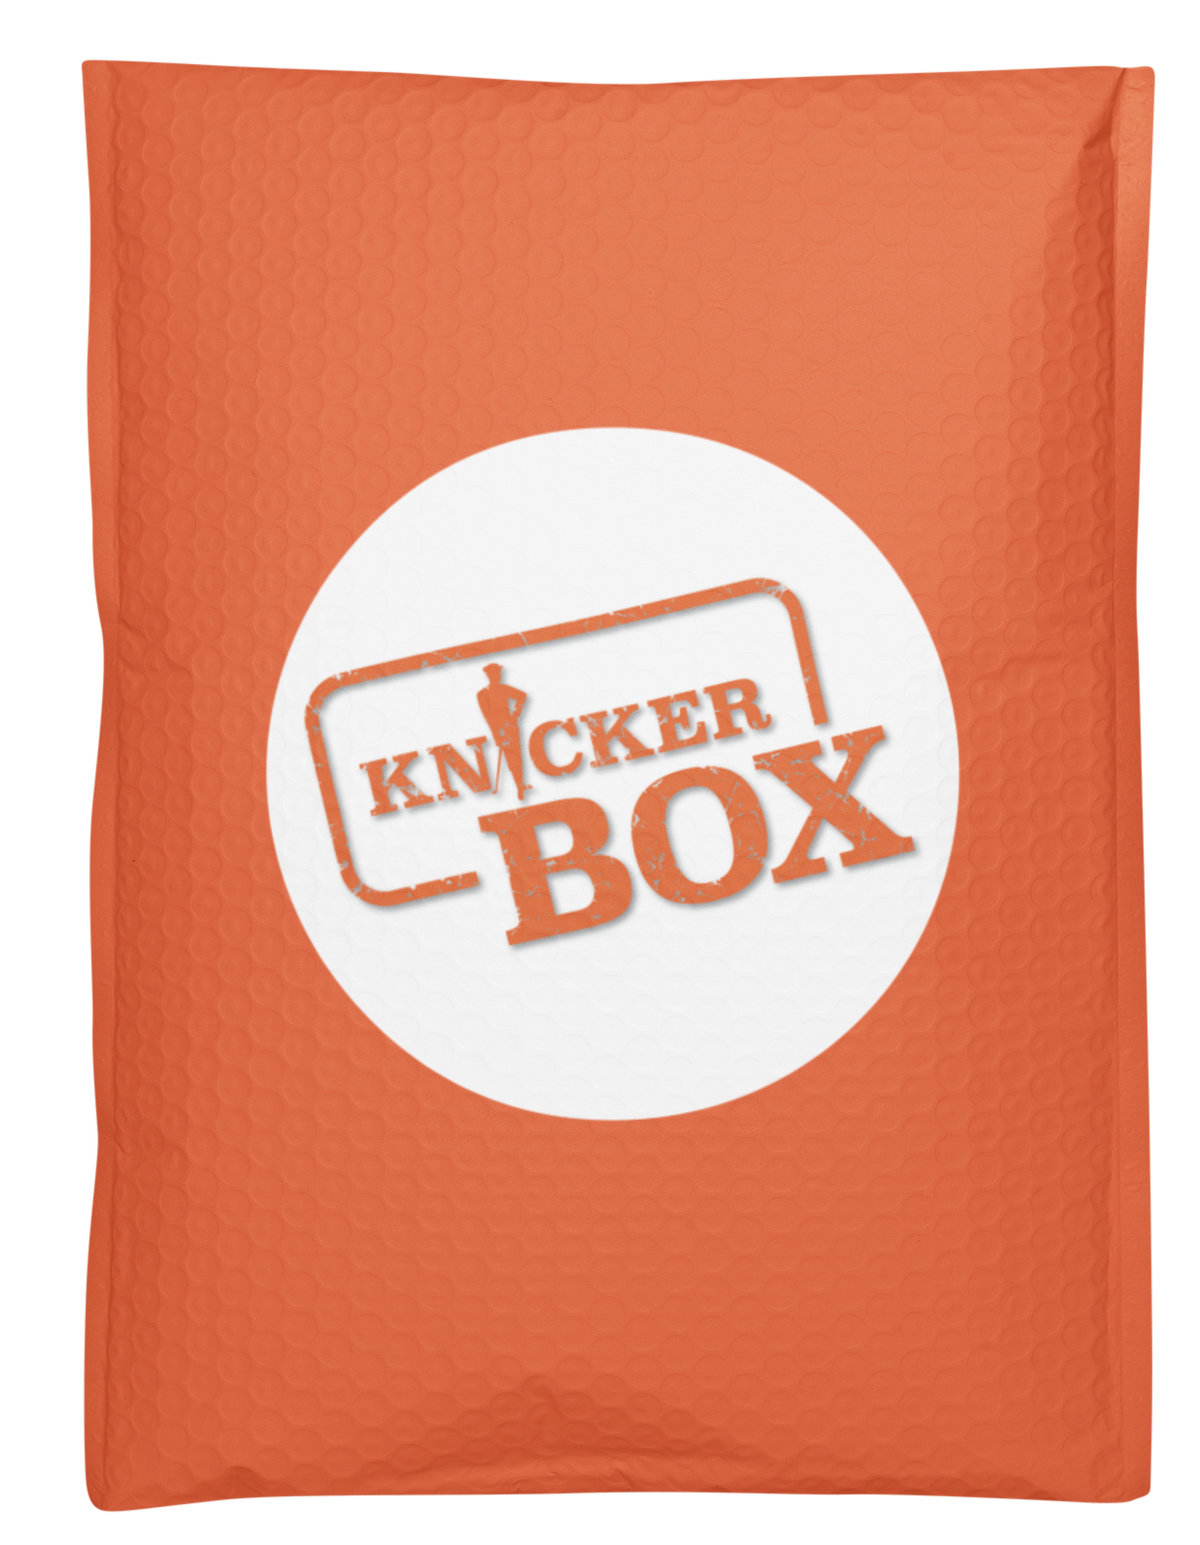 Mr. KnickerBox - PRESS BOX LEVEL